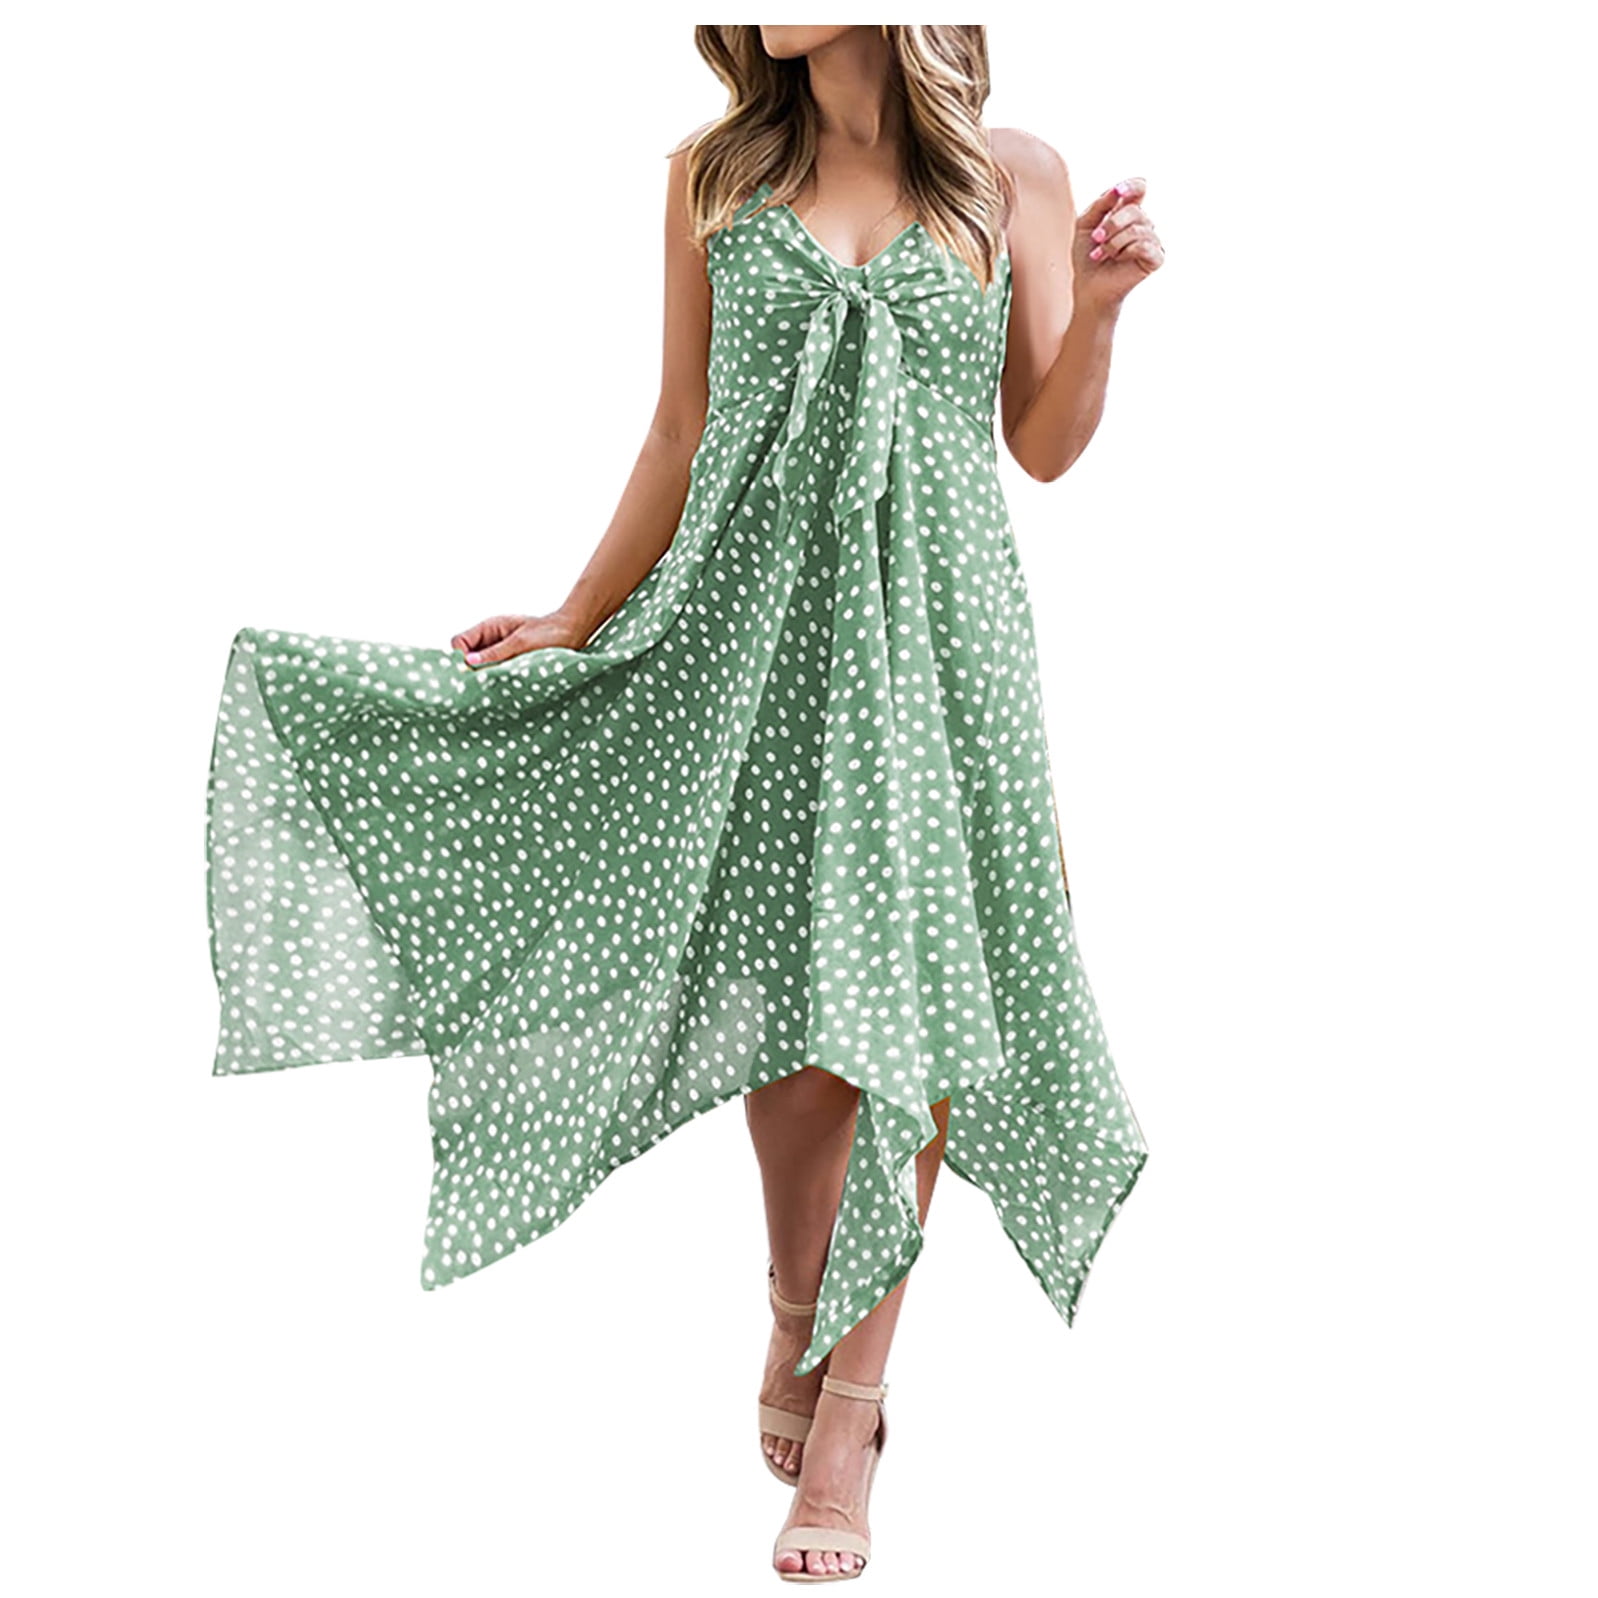 Polka Dot Women Dress Summer Beach Sundress High Low Asymmetrical Swing Hem